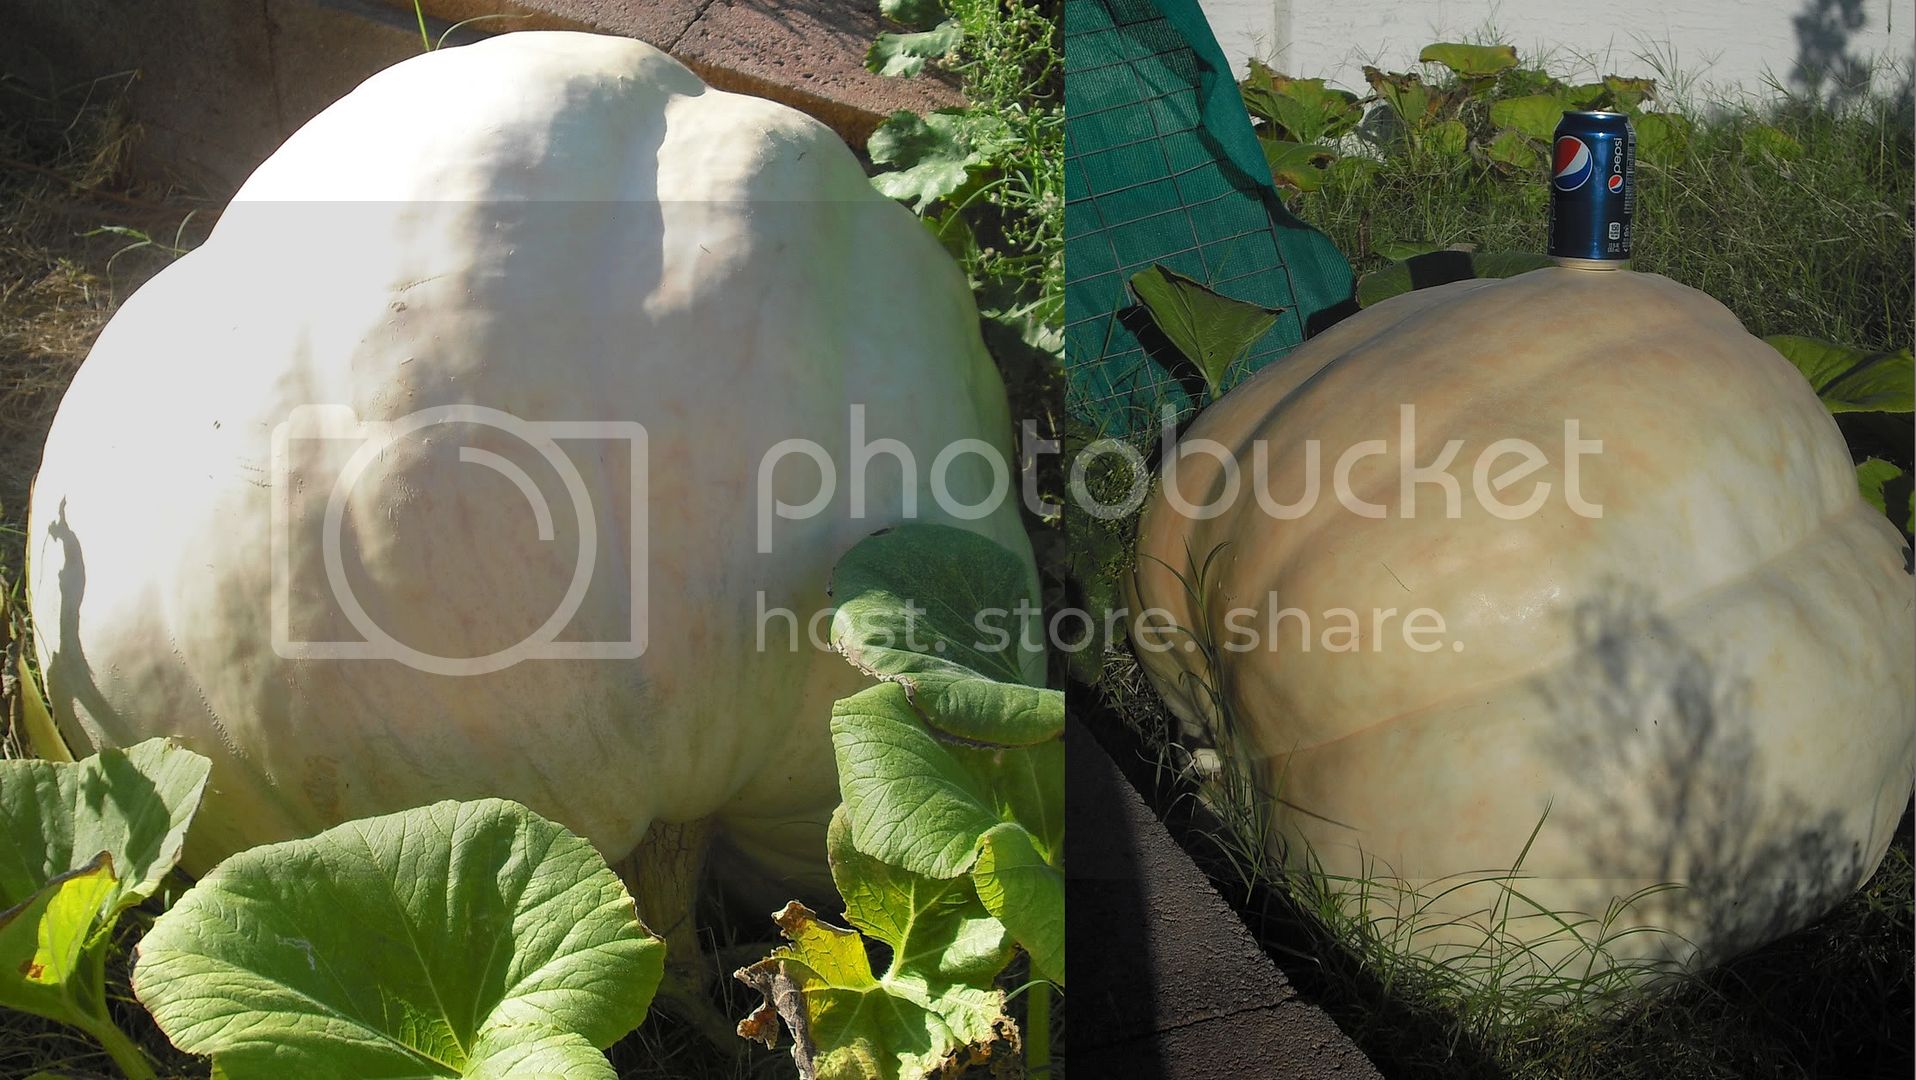 GiantPumpkin.jpg